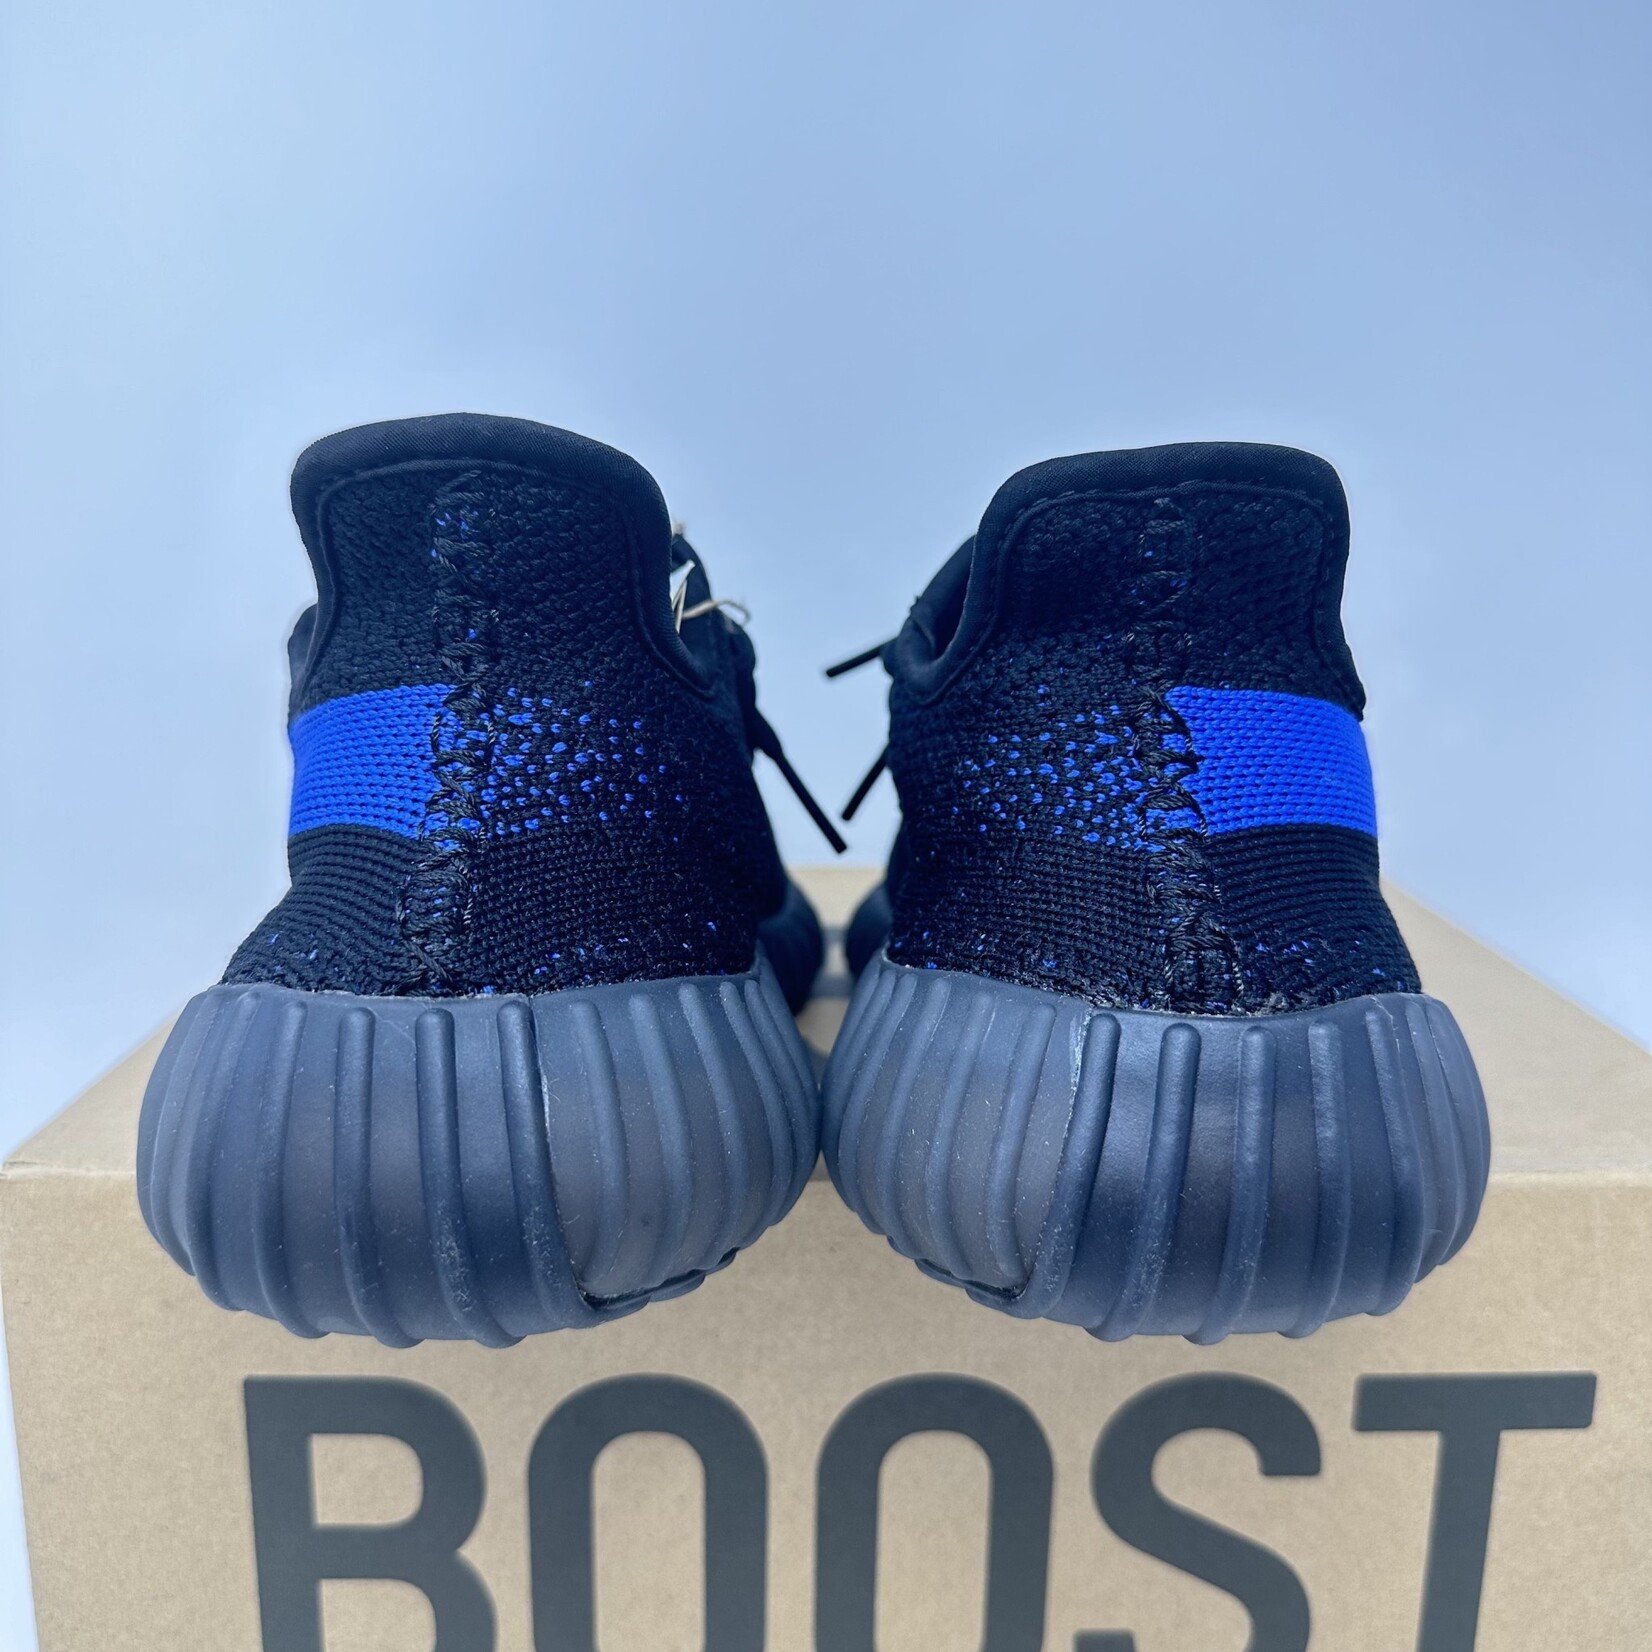 Adidas adidas Yeezy Boost 350 V2 Dazzling Blue